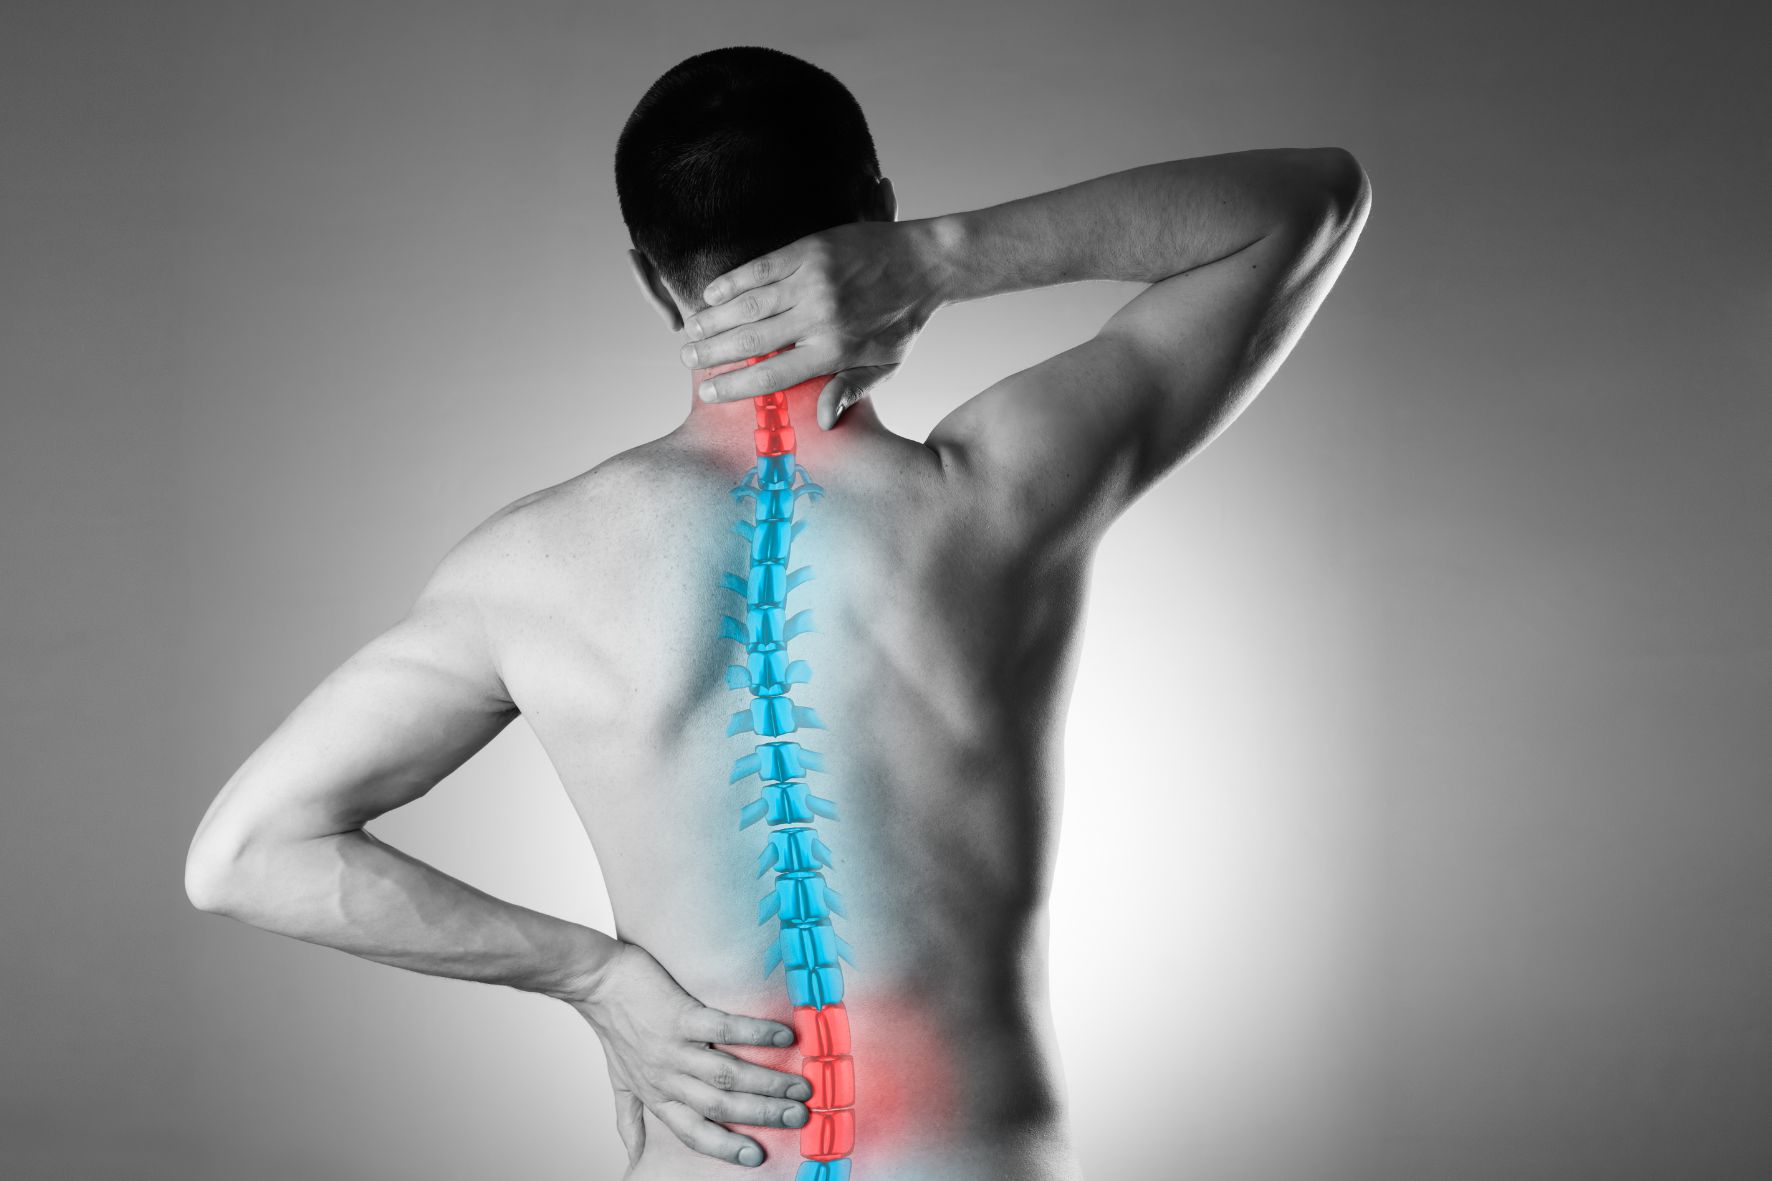 Težave s hrbtenico, mišicami in drugimi sklepi Boli vrat ali križ? Se bolečina širi v okončine? Kateri sklep je najbolj razbolel?